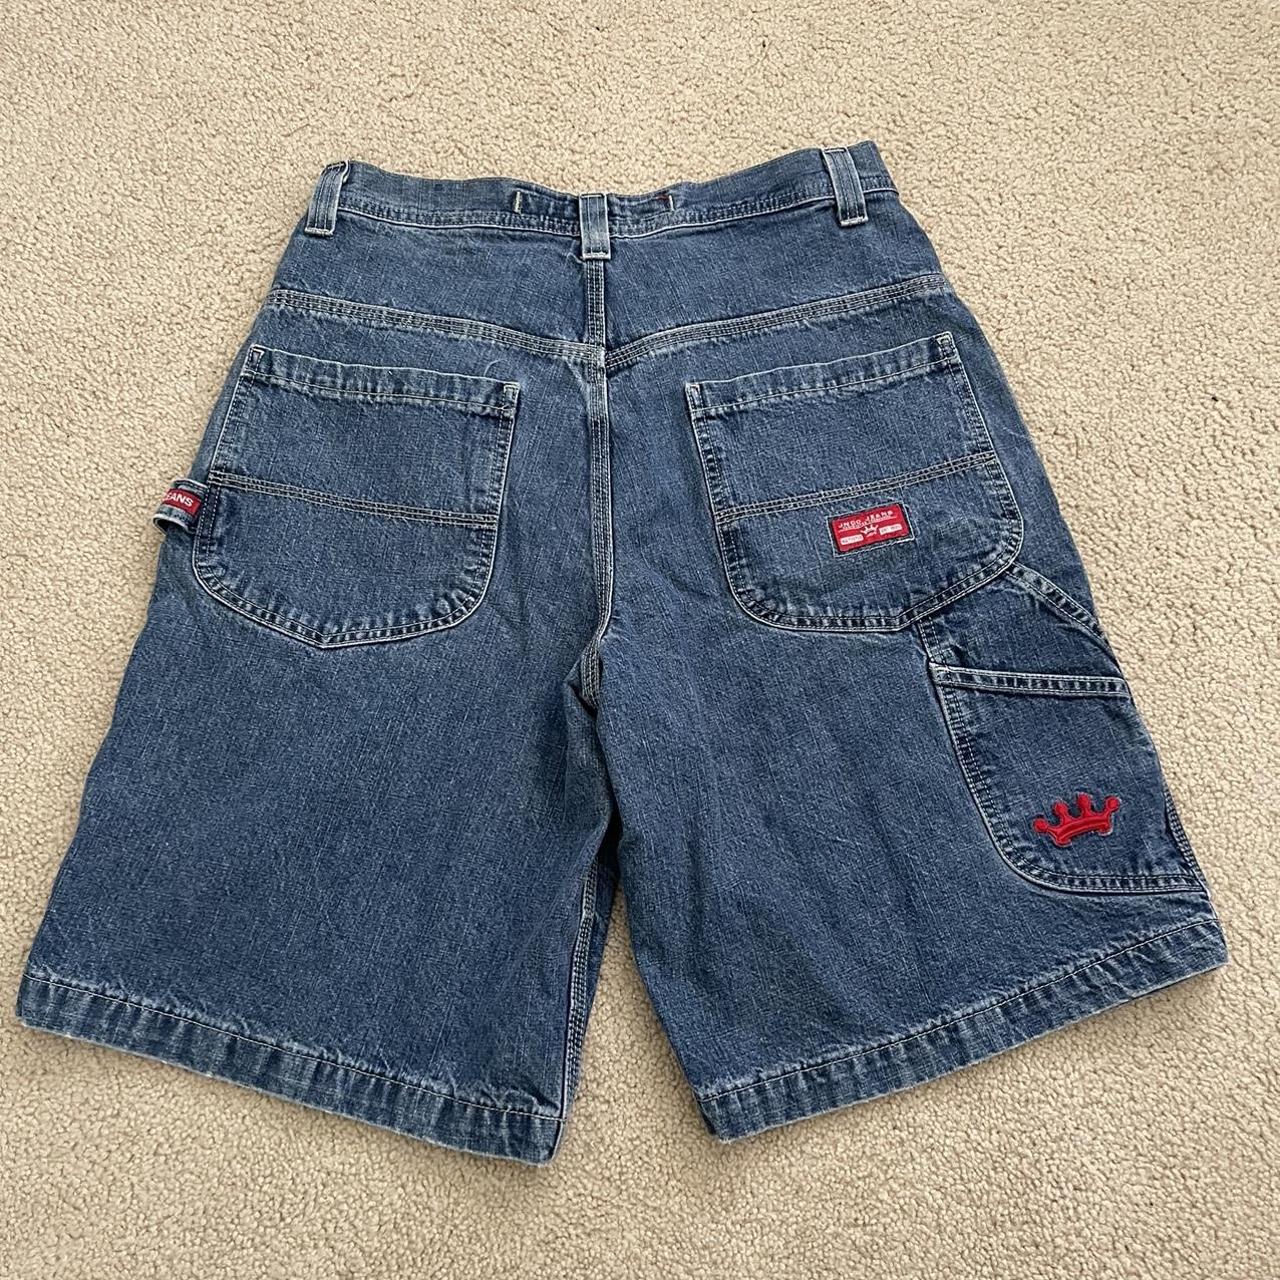 vintage 90s carpenter jnco jeans shorts really nice... - Depop